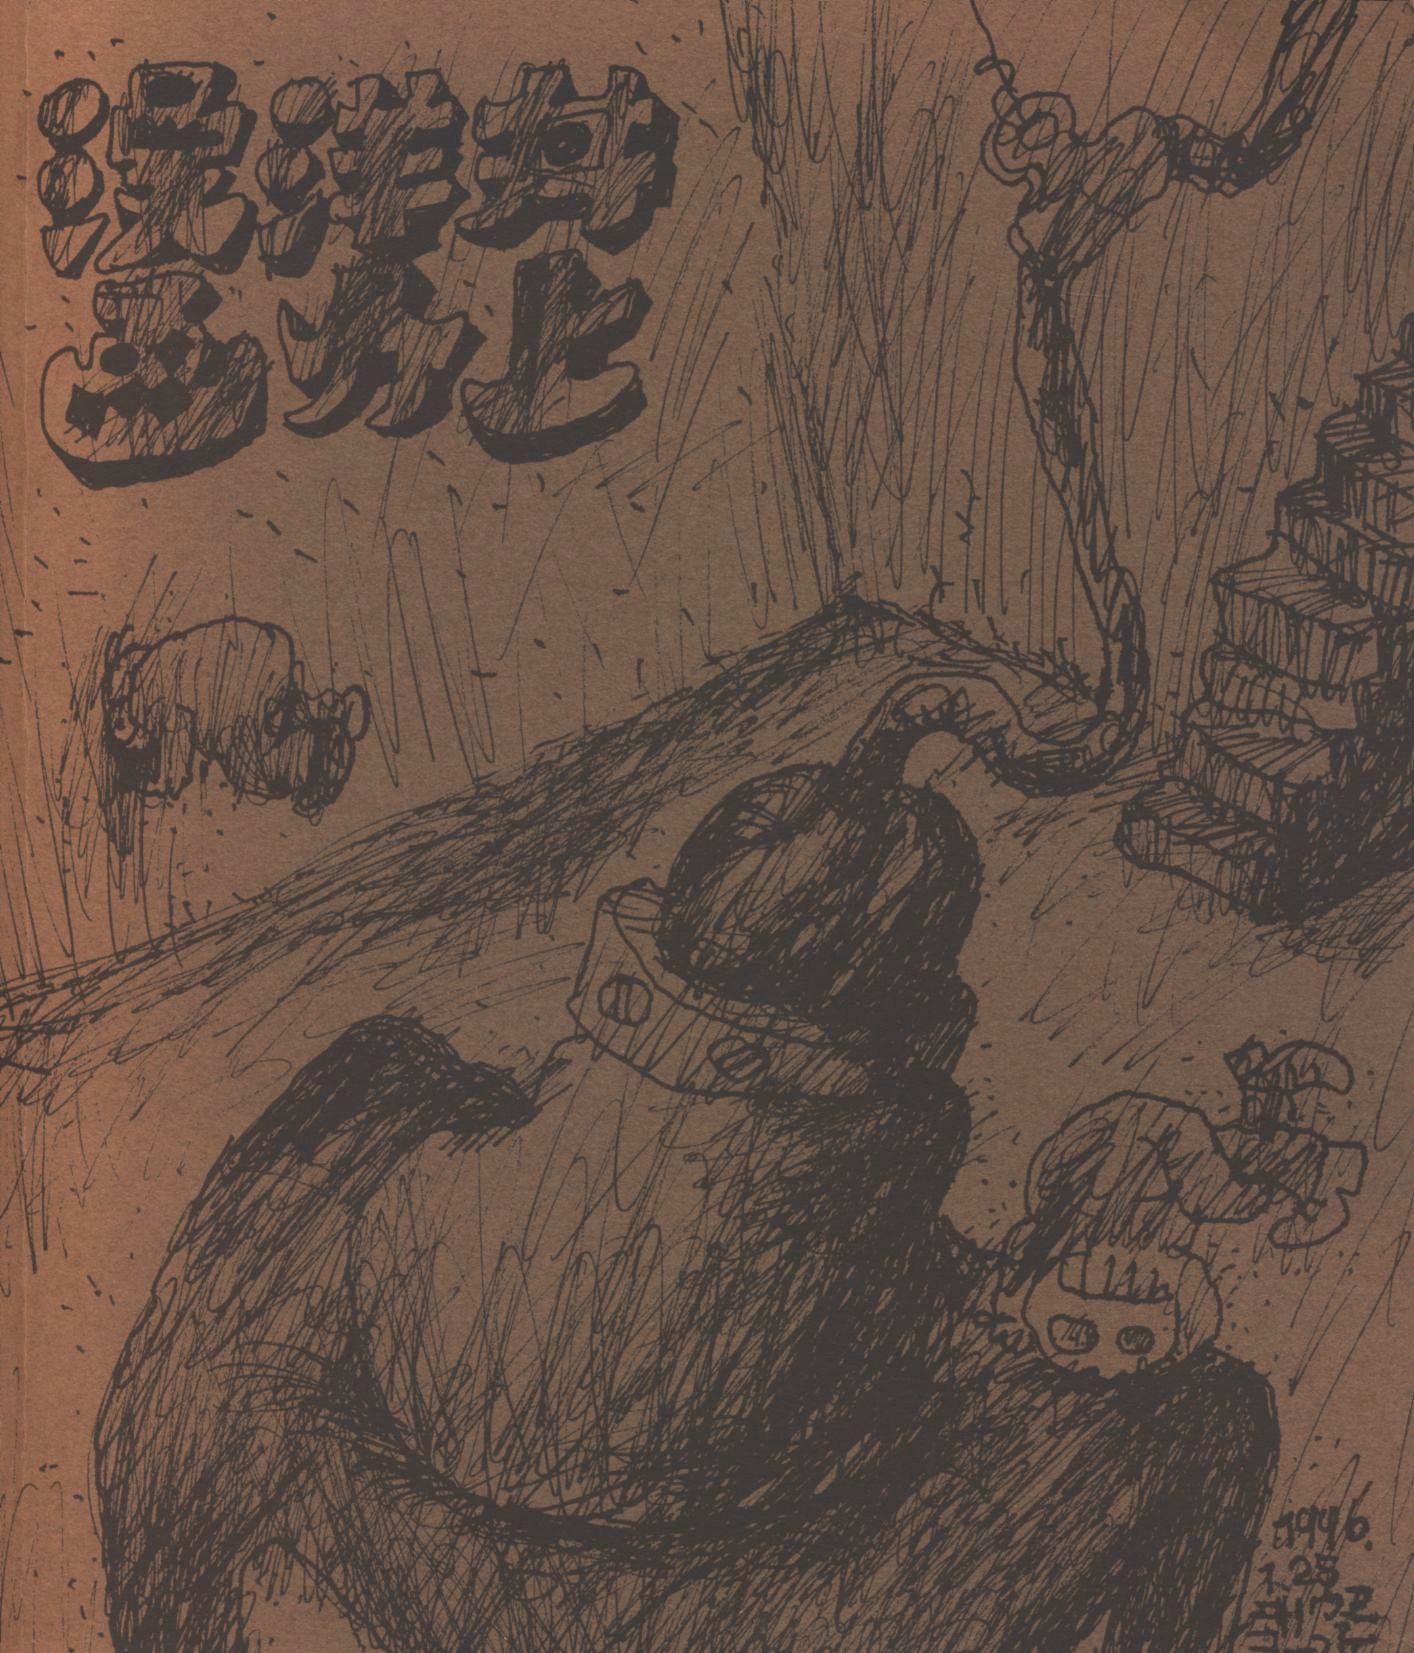 代引き人気 井上洋介 漫画 限定300部 オリジナル 木版画付き abamedyc.com